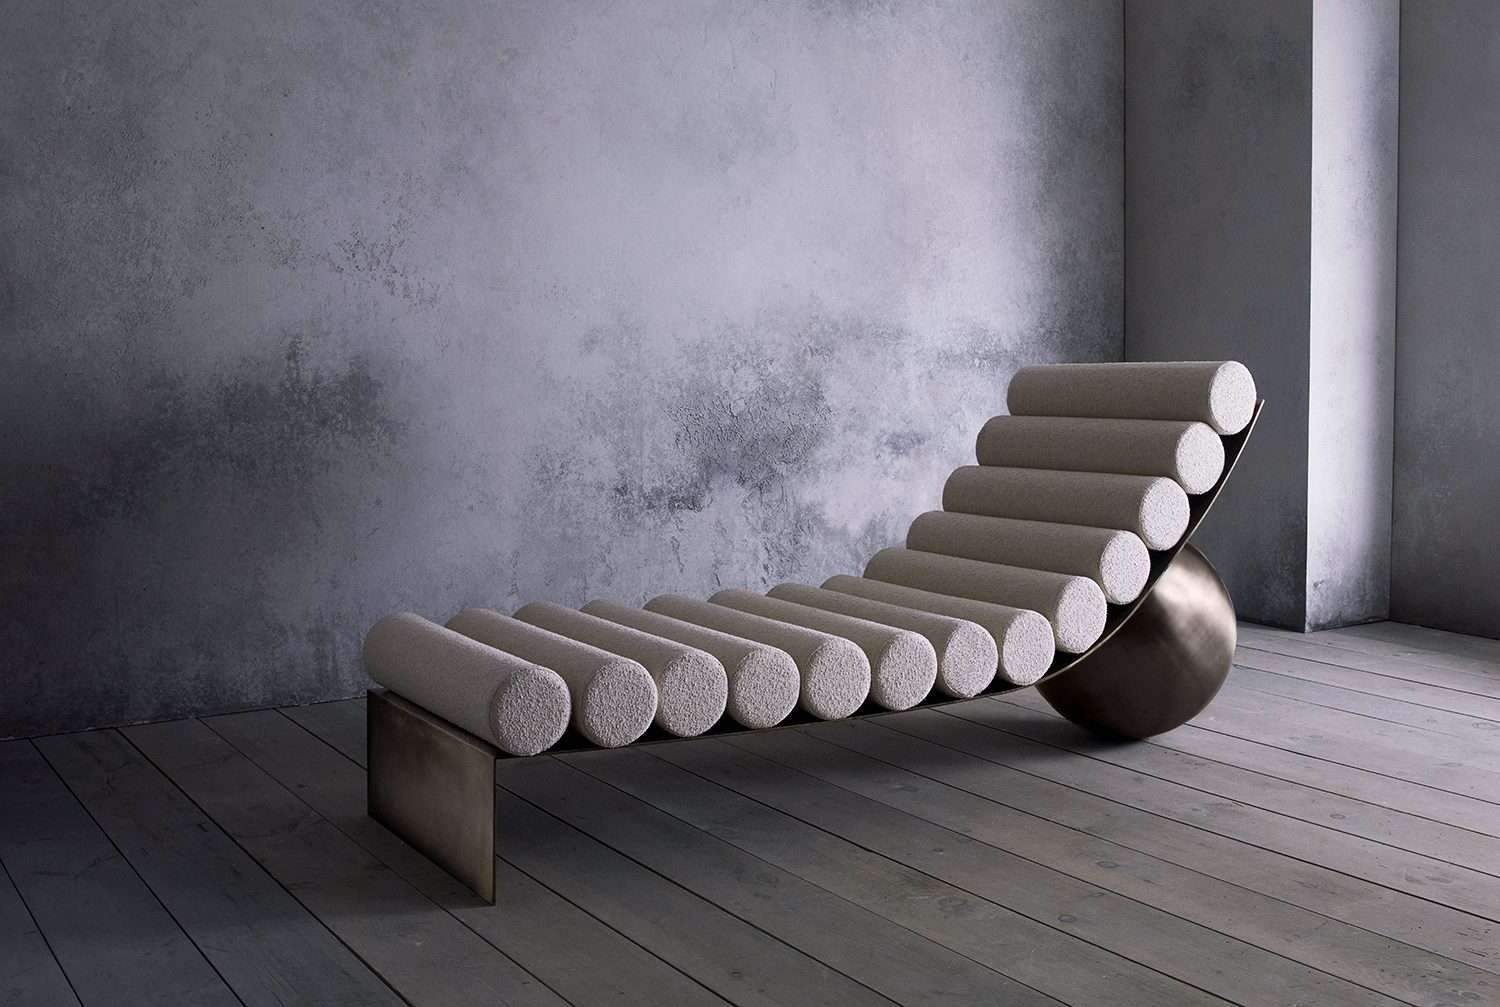 Curved Chaise chair Milan Design Week كرسي منحني من أسبوع ميلان للتصميم